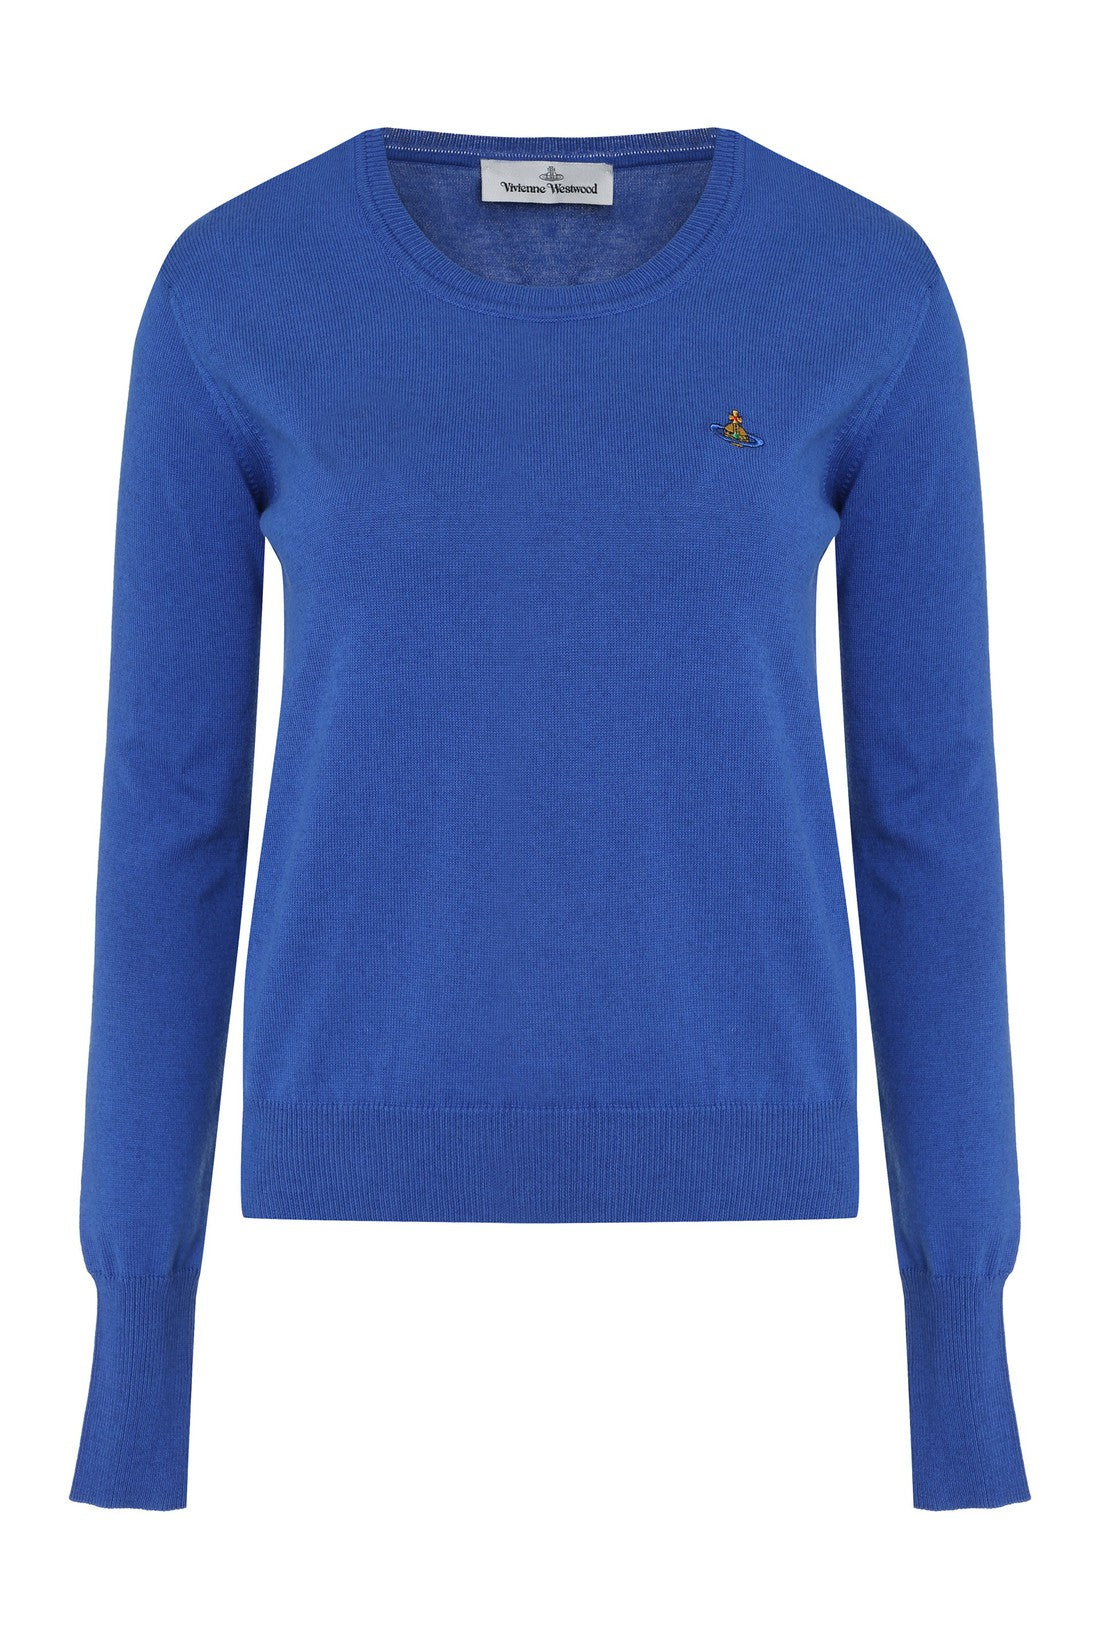 Vivienne Westwood-OUTLET-SALE-Bea crew-neck cashmere sweater-ARCHIVIST